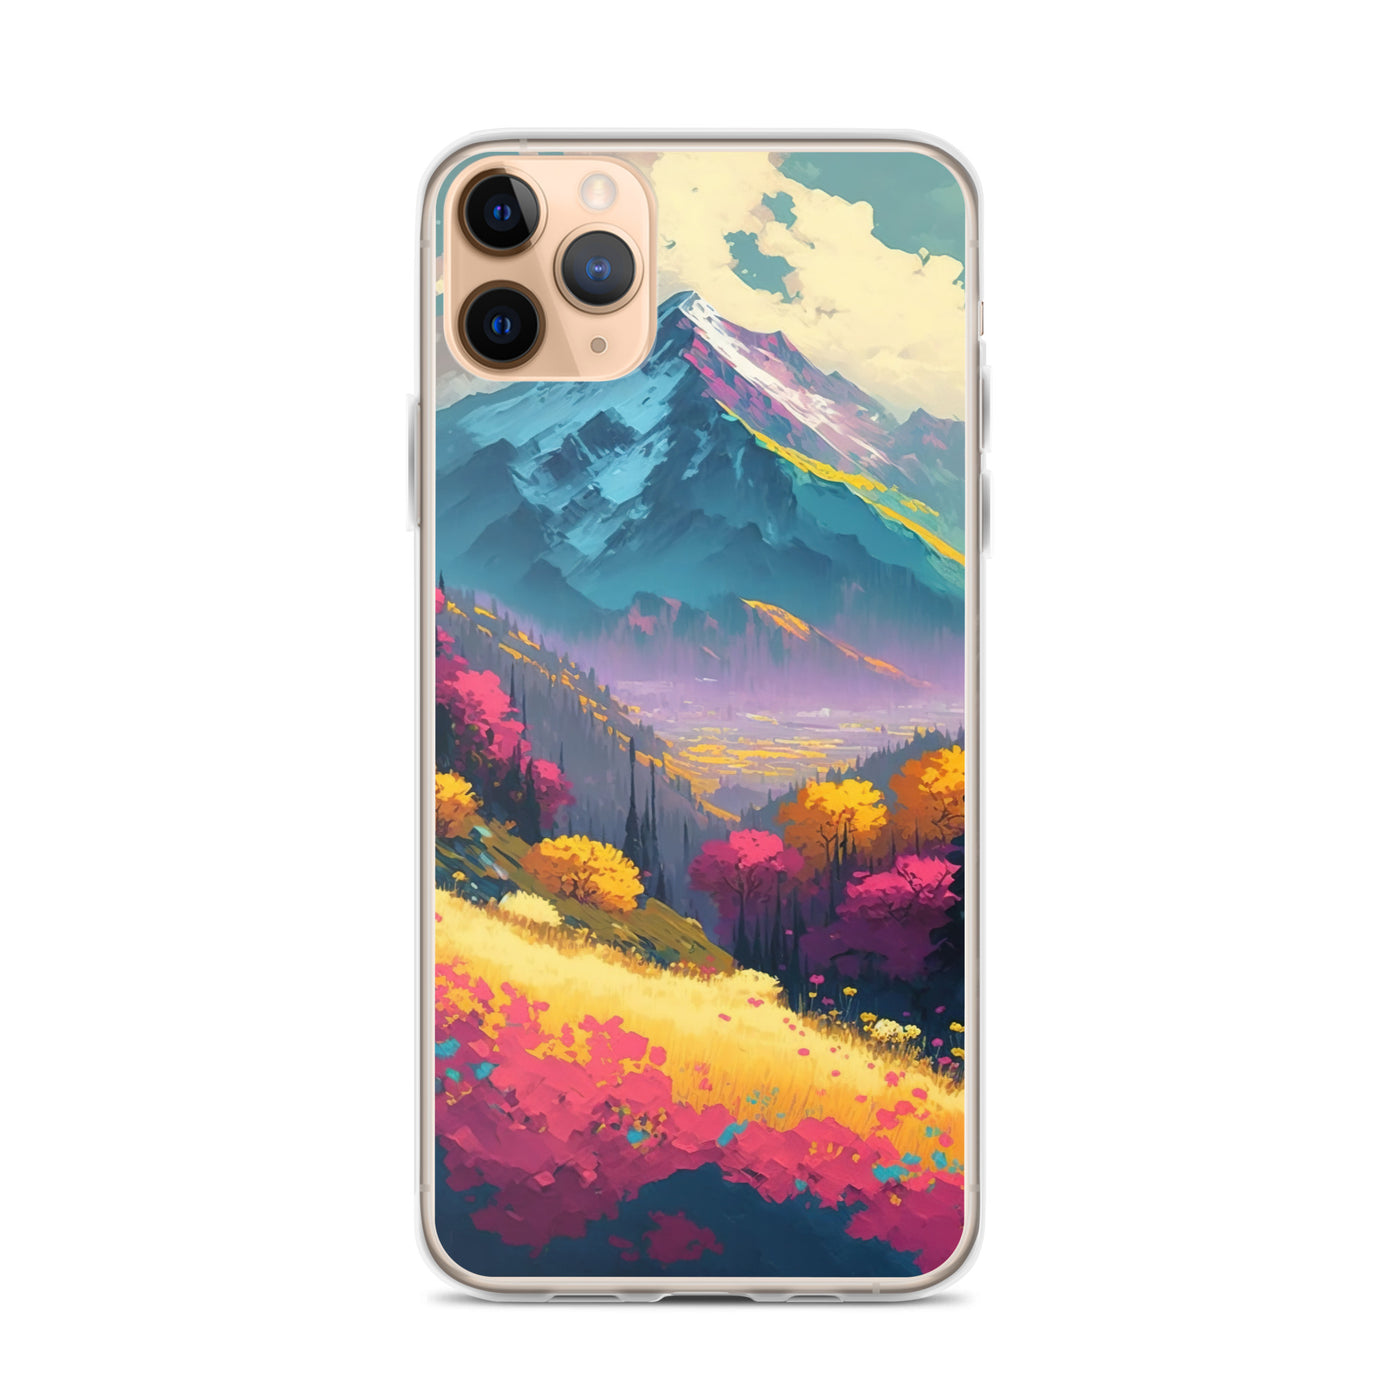 Berge, pinke und gelbe Bäume, sowie Blumen - Farbige Malerei - iPhone Schutzhülle (durchsichtig) berge xxx iPhone 11 Pro Max